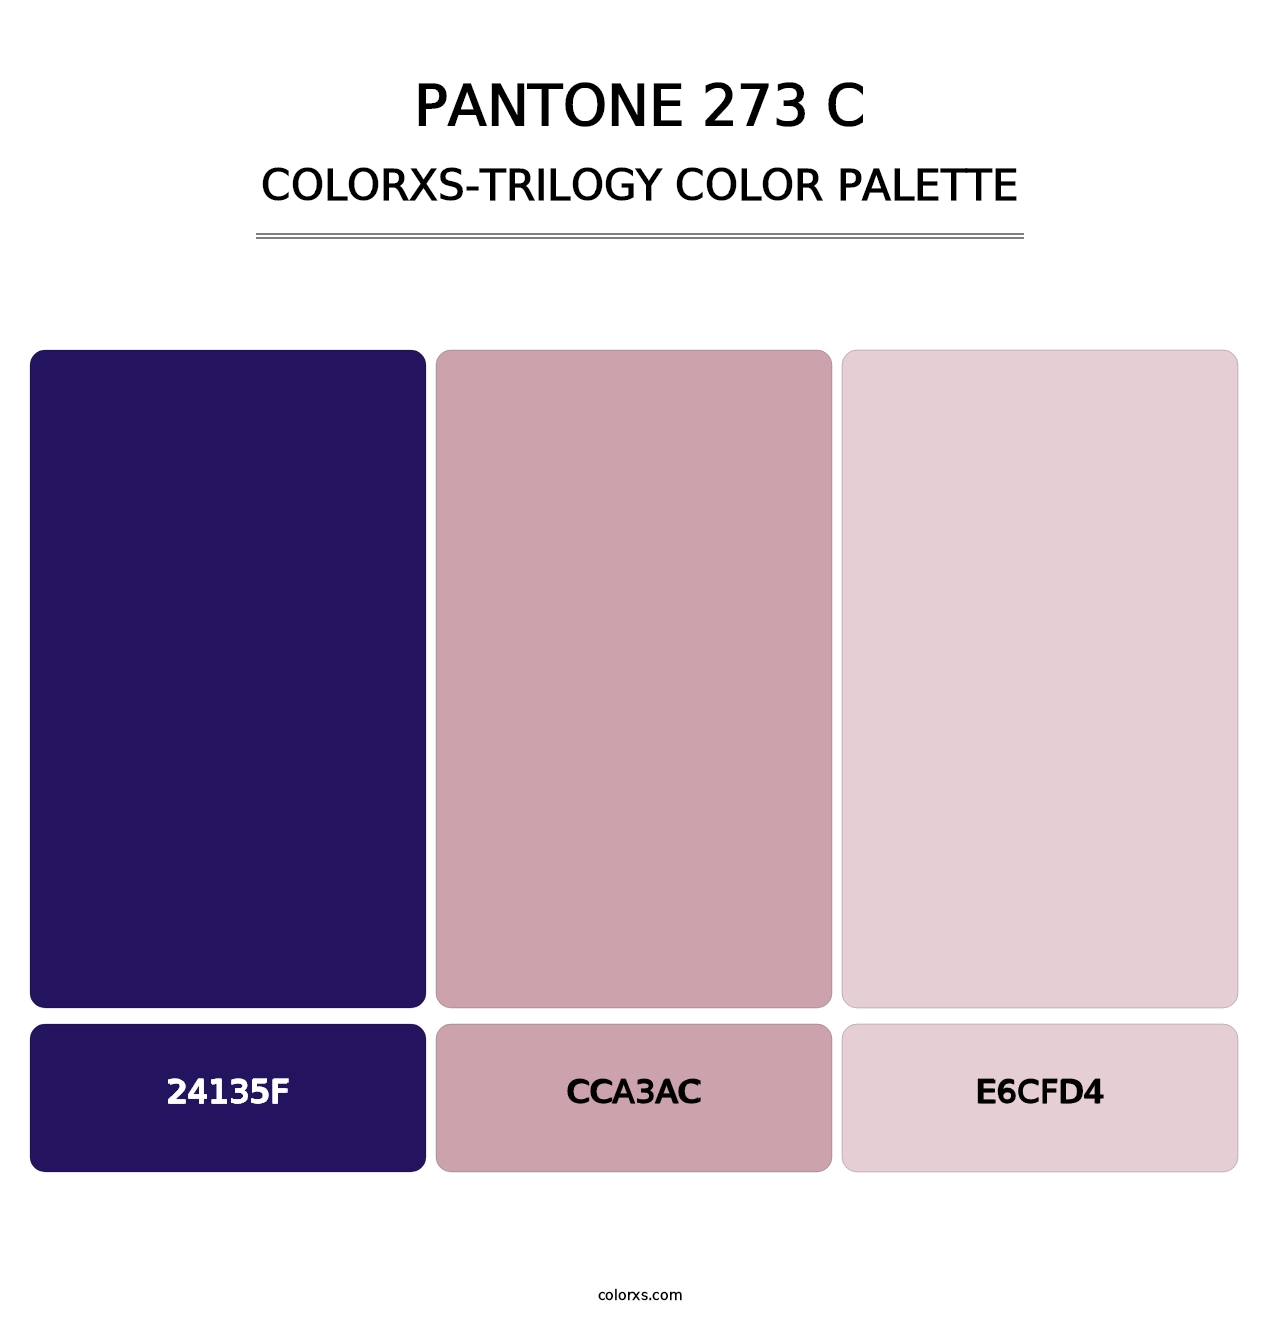 PANTONE 273 C - Colorxs Trilogy Palette